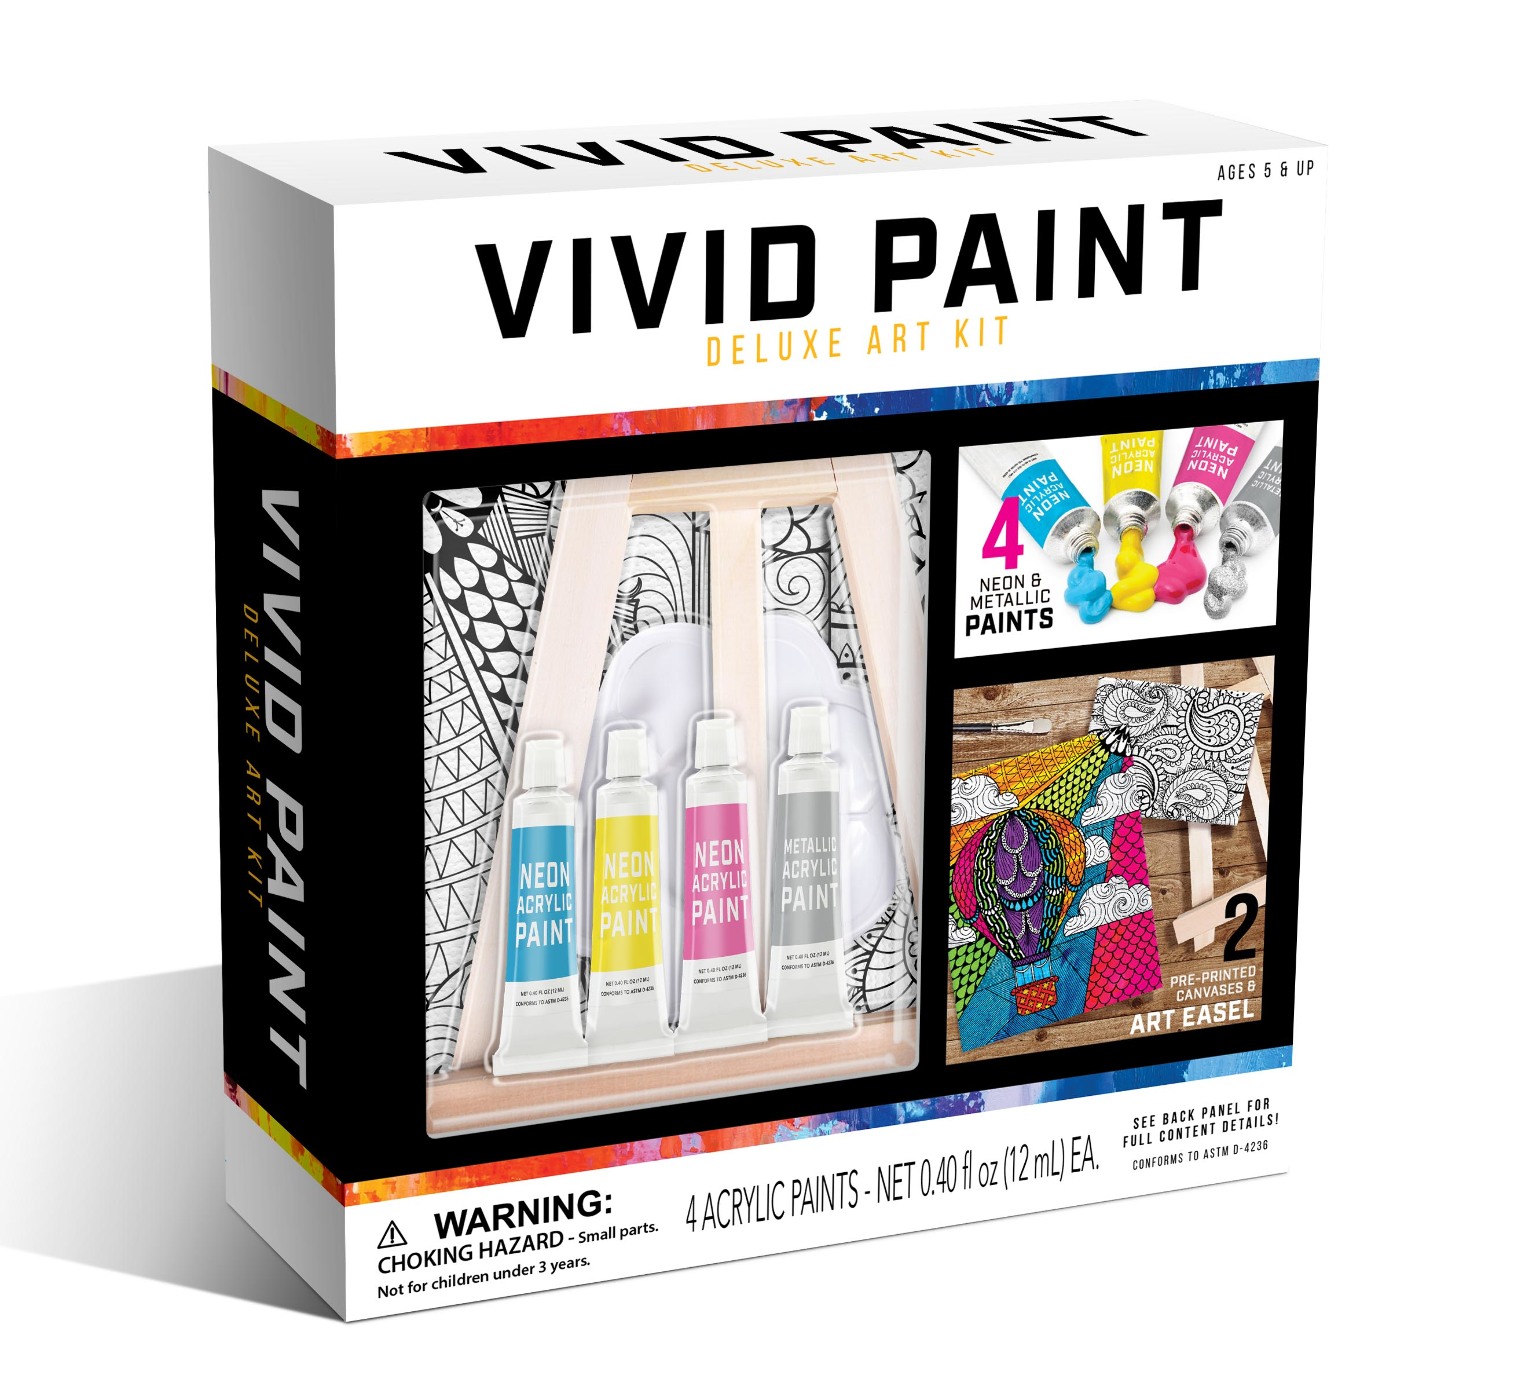 Vivid Paint Deluxe Art Kit